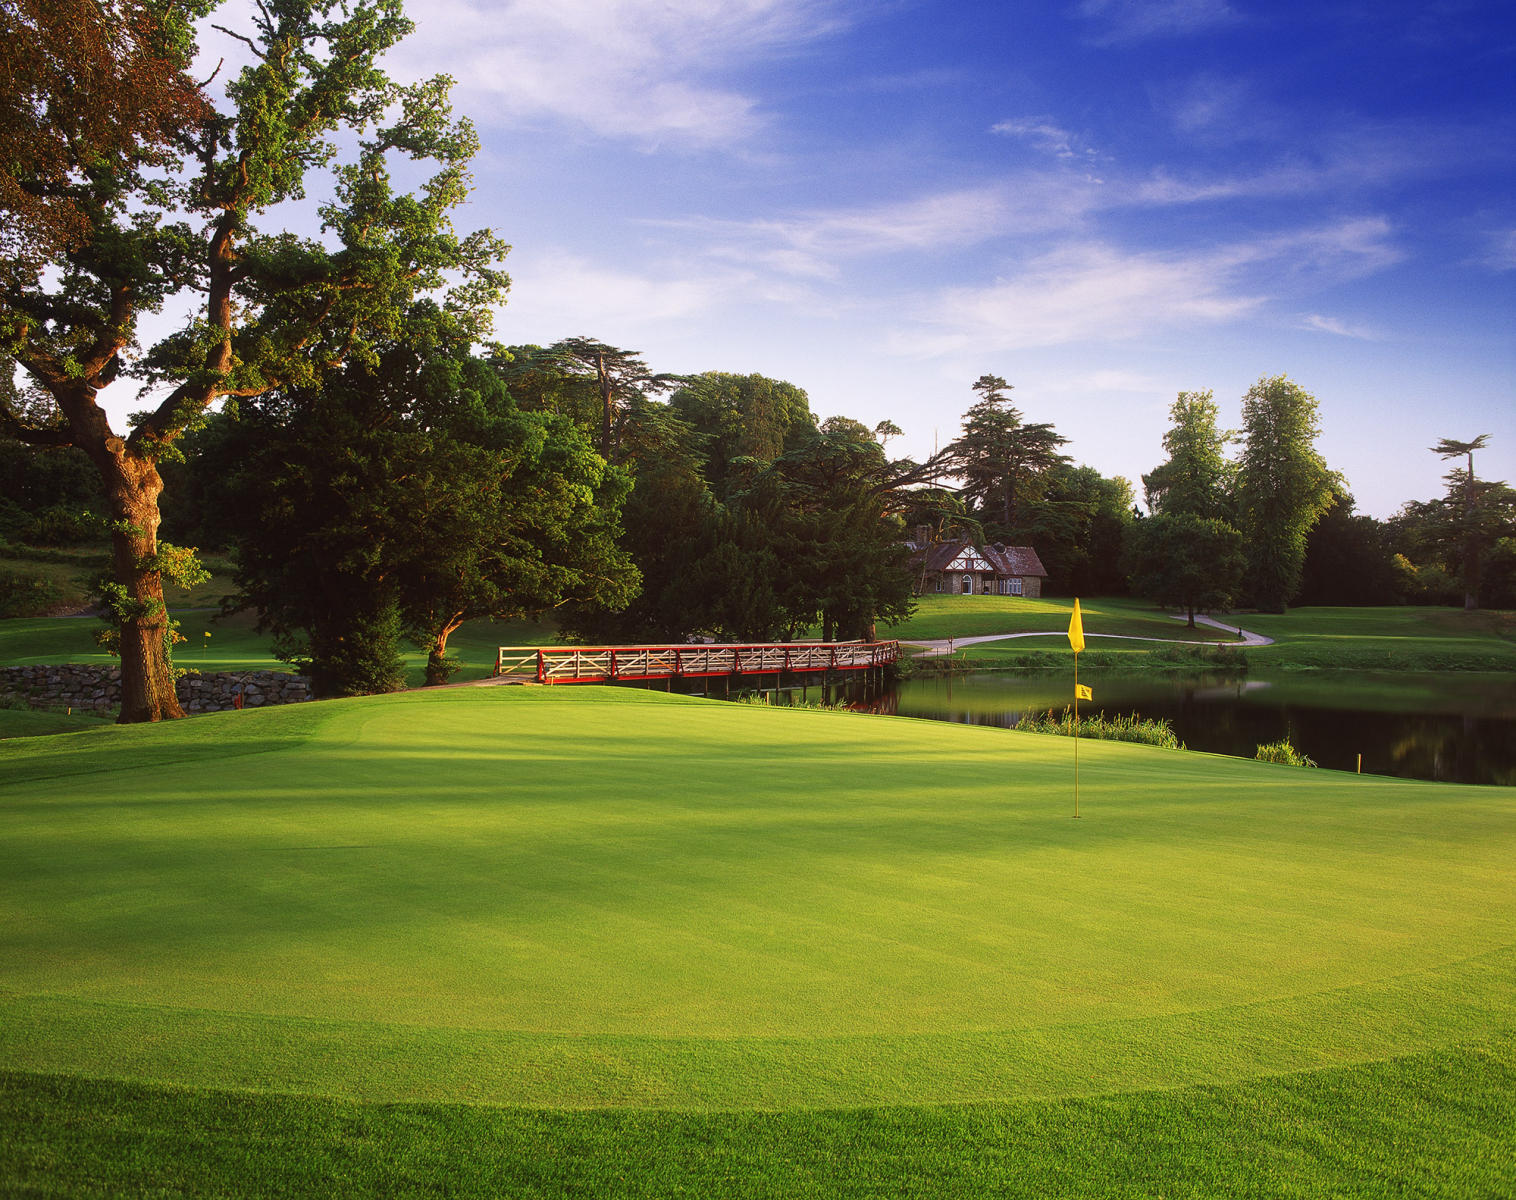 Carton House Golf Club/O'Meara #16, Maynooth, Ireland